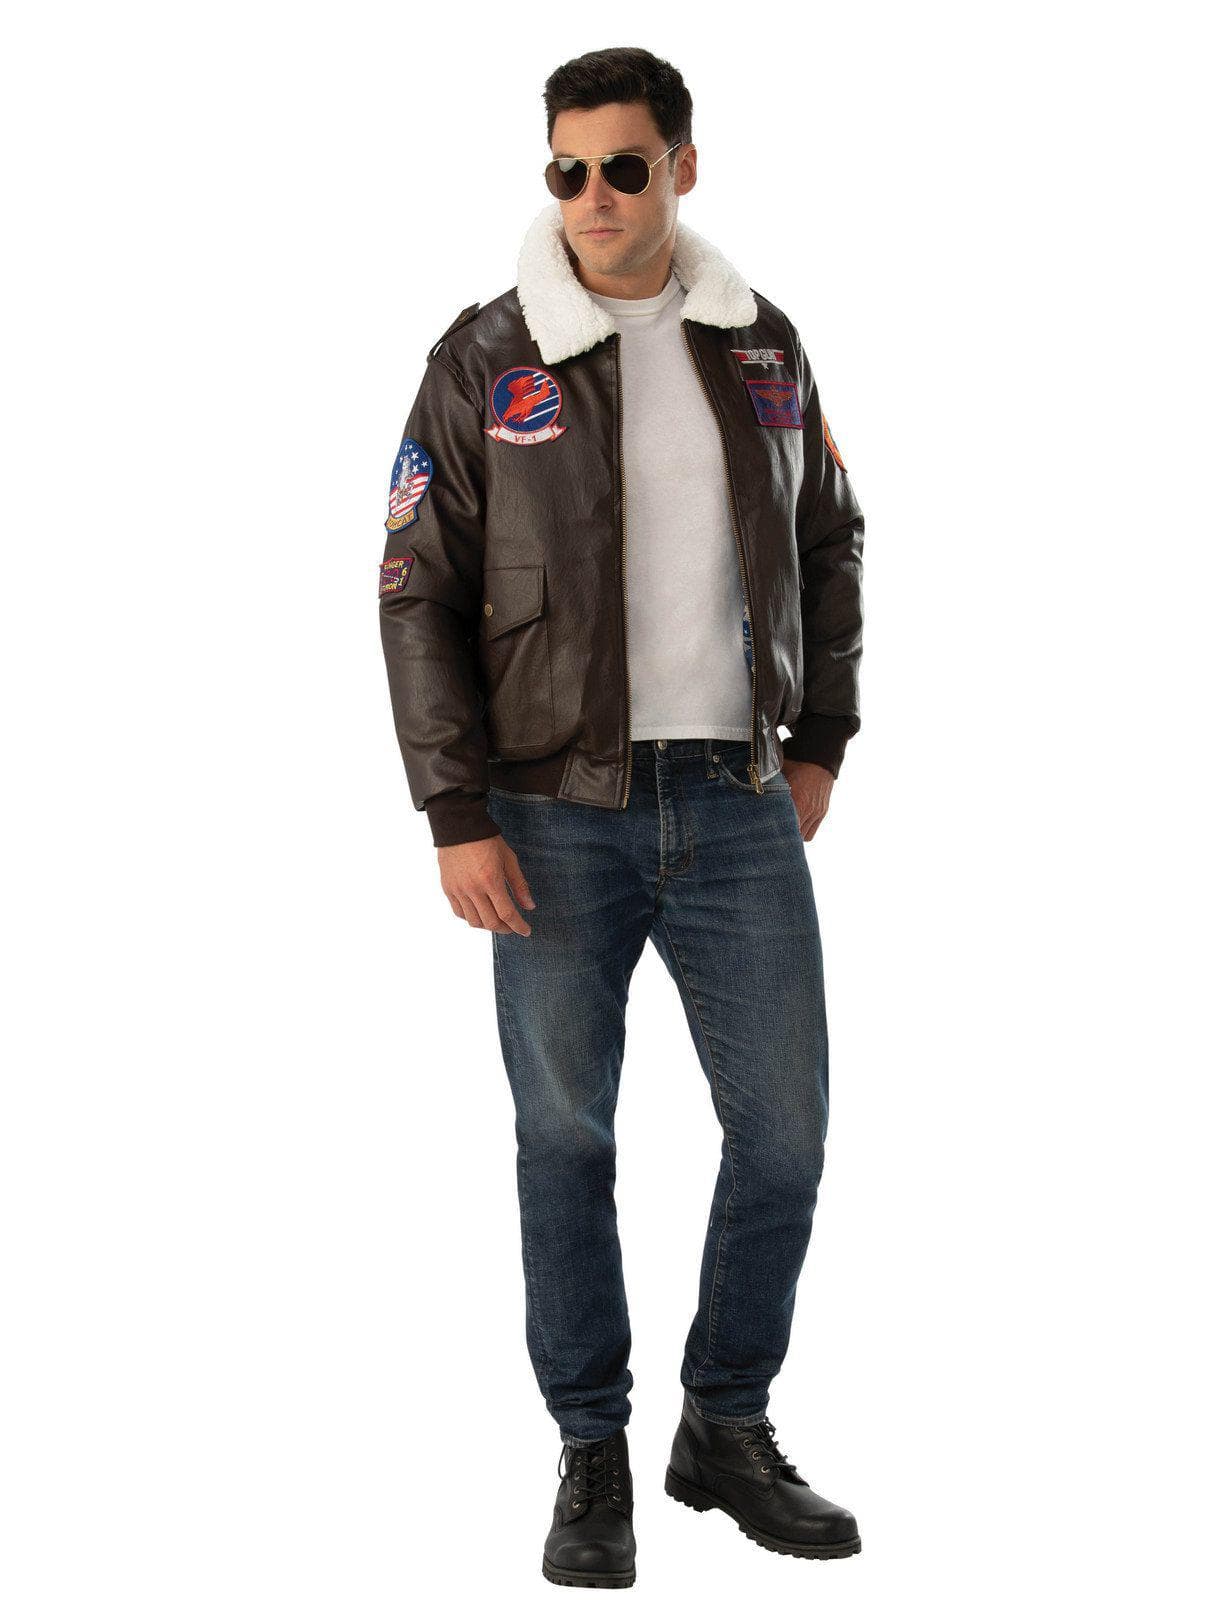 Adult Top Gun Jacket - costumes.com